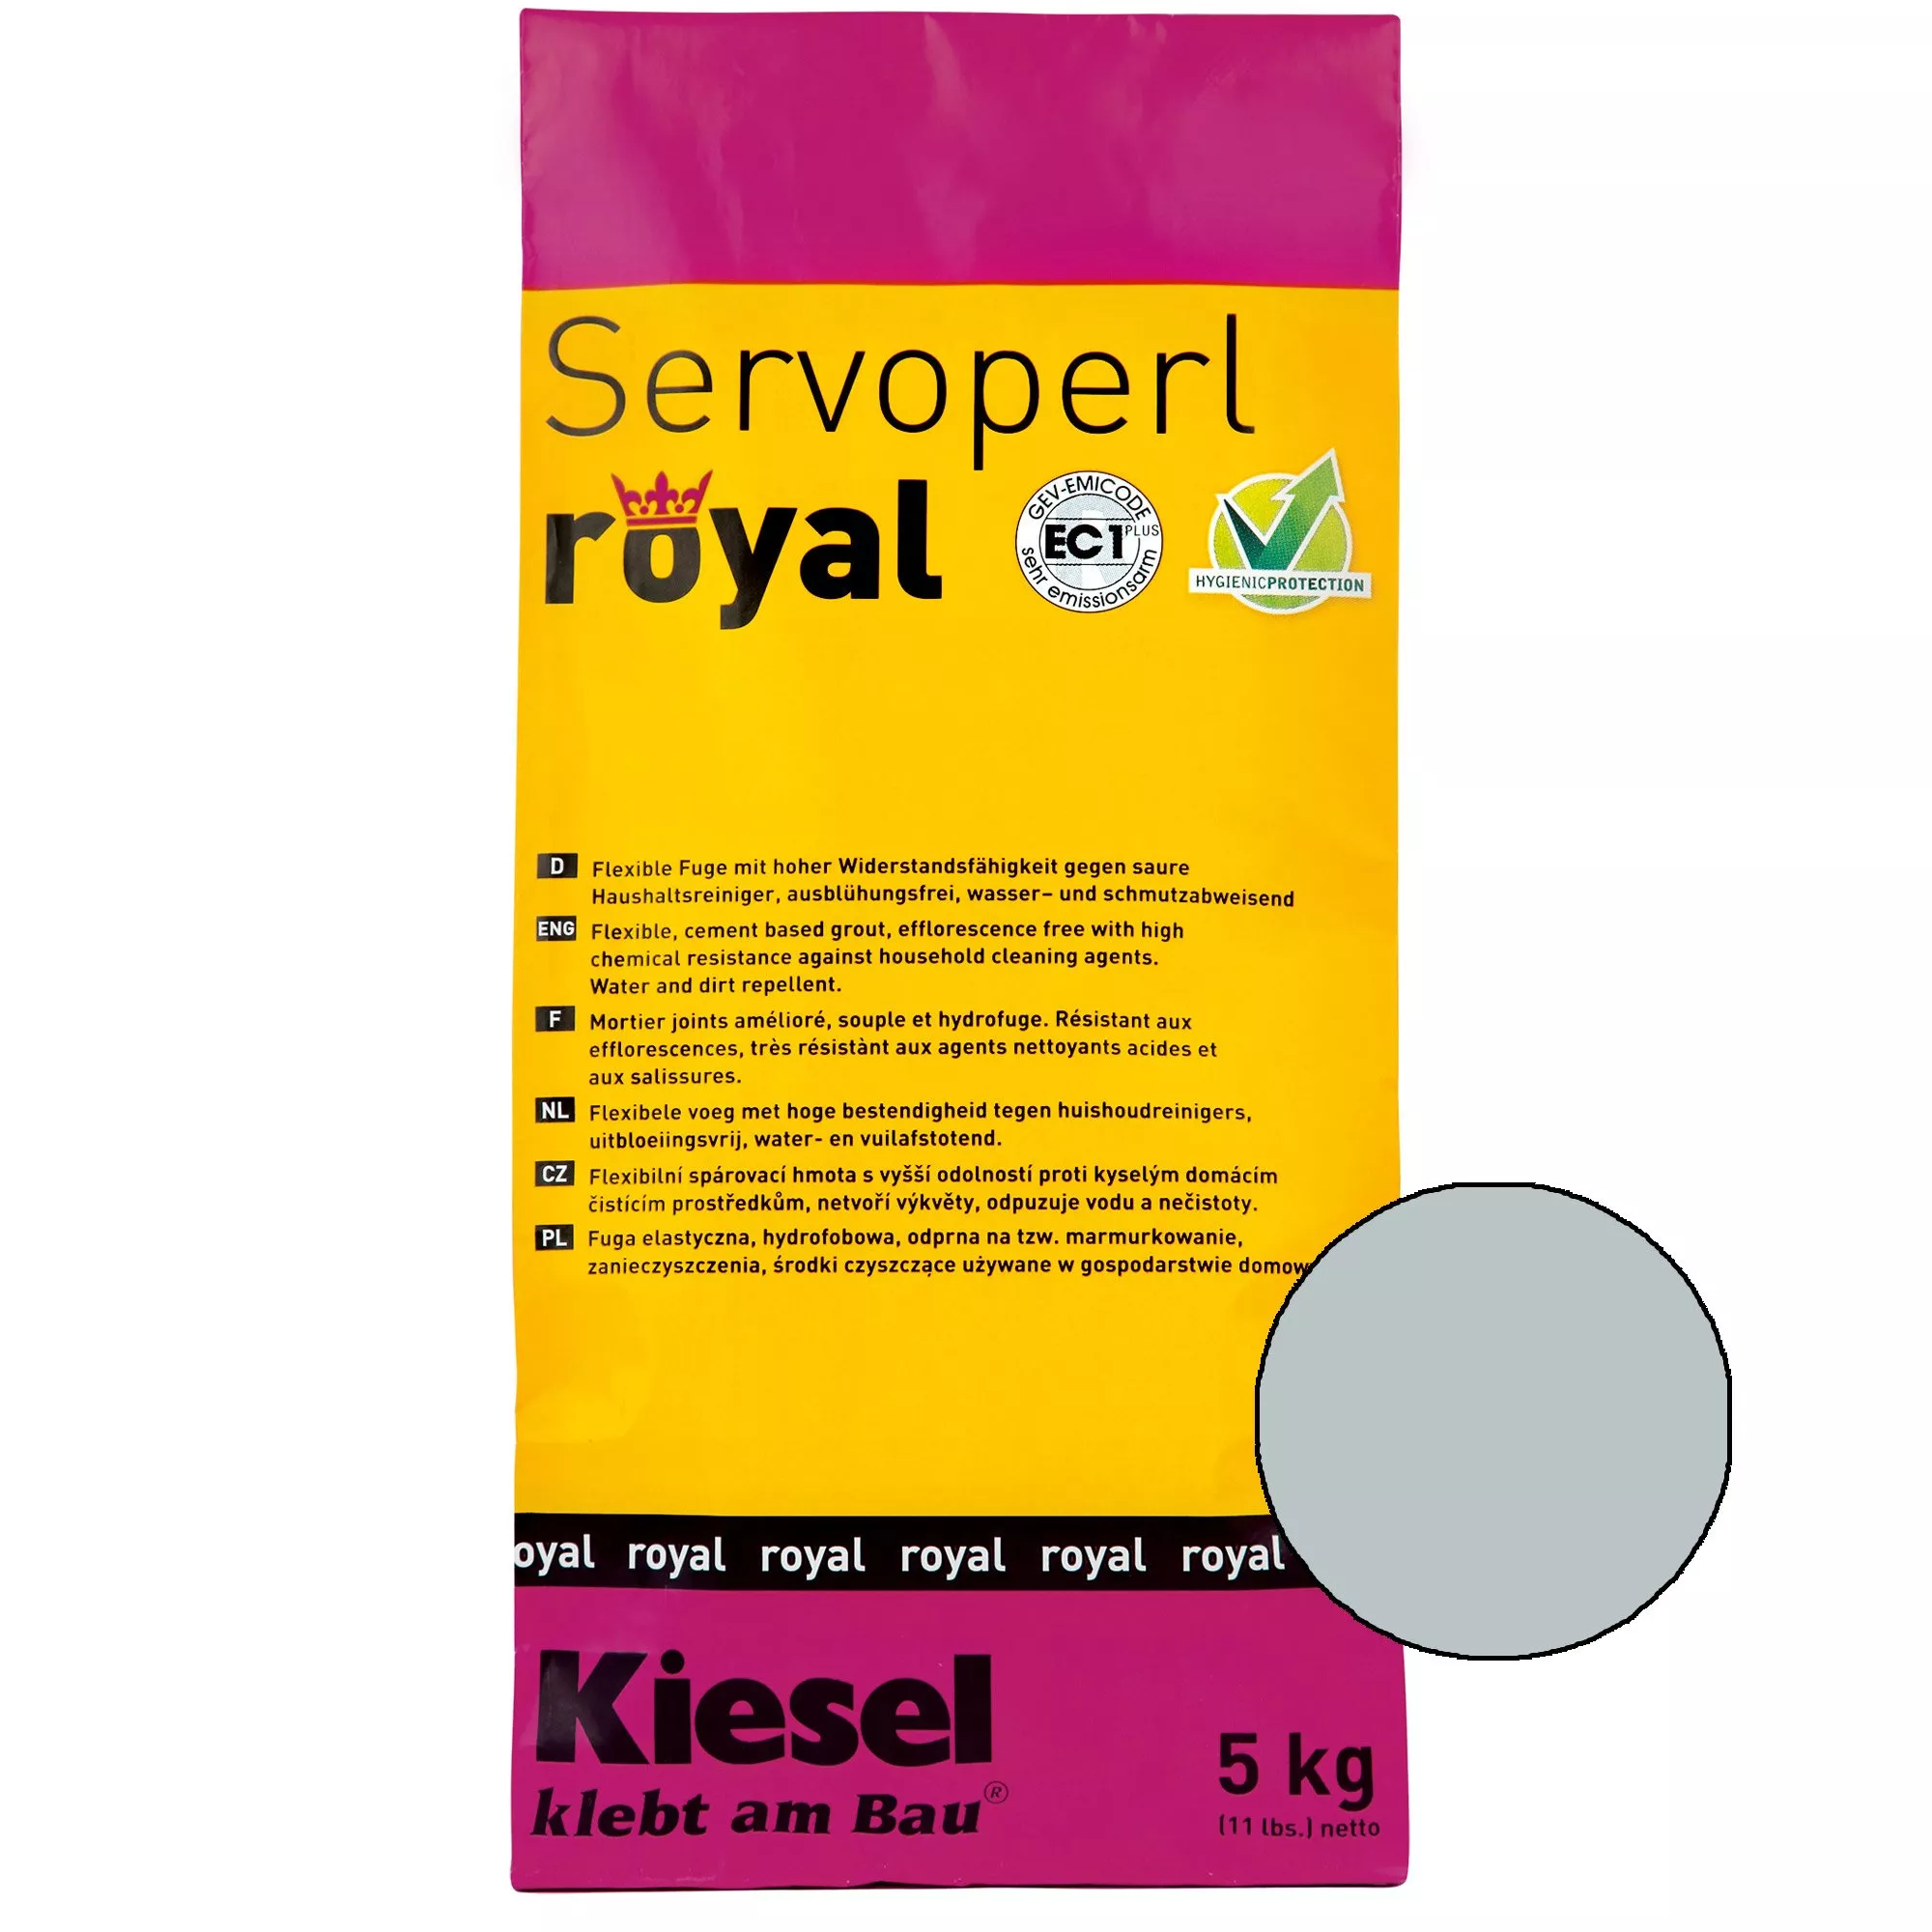 Kiesel Servoperl royal - saumaseos - 5 kg Manhattan